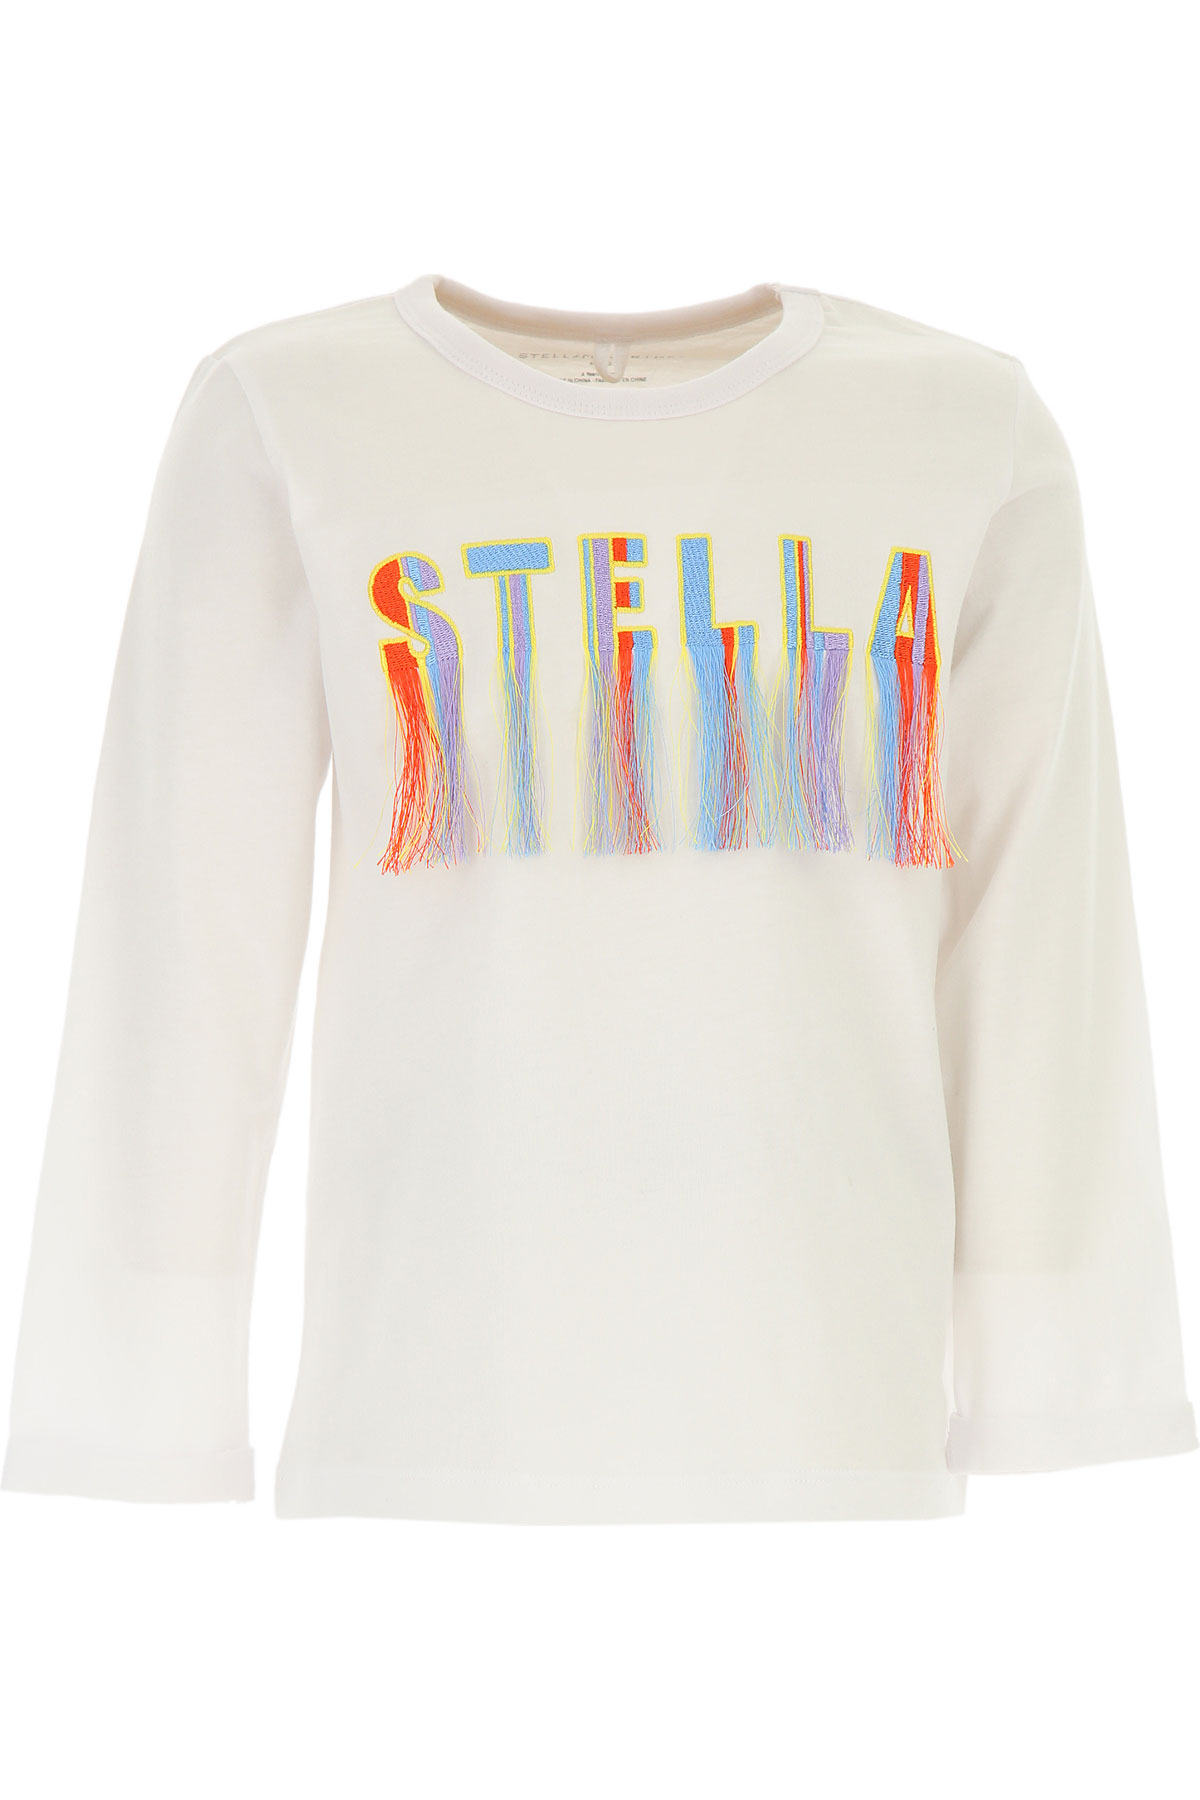 Stella McCartney Kinder T-Shirt für Mädchen Günstig im Sale, Weiss, Baumwolle, 2017, 10Y 12Y 14Y 16Y 4Y 6Y 8Y